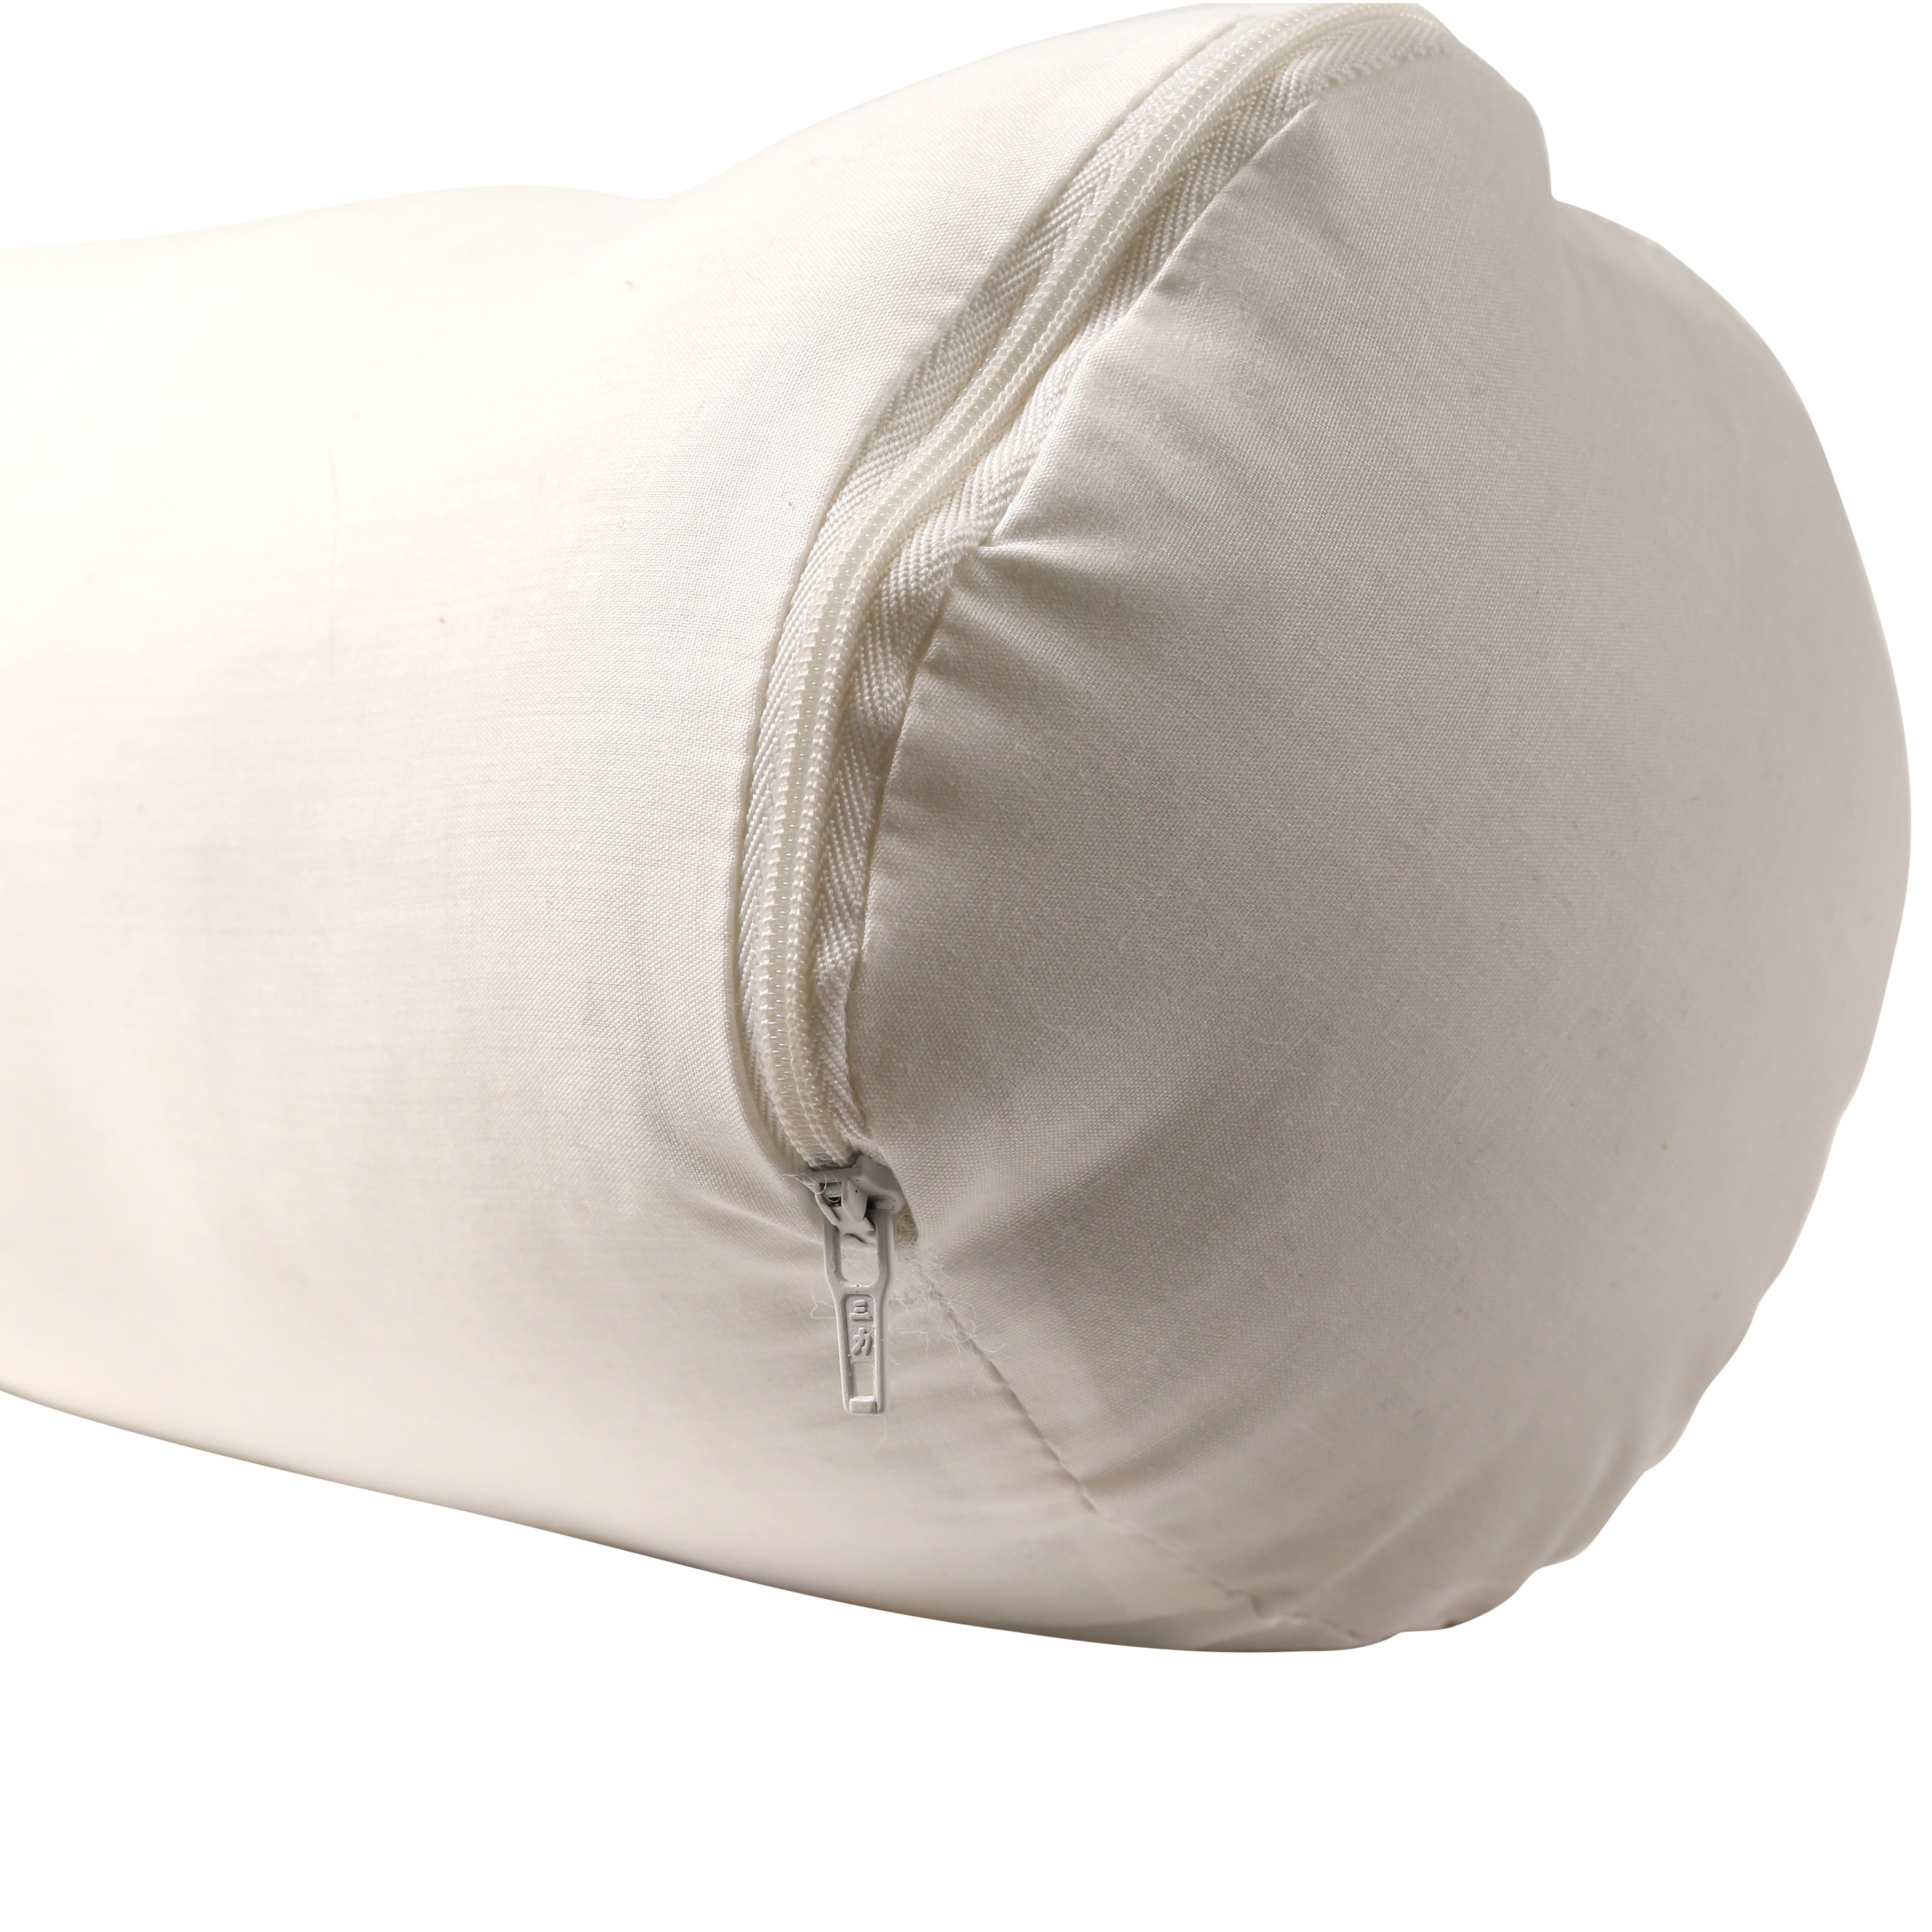 Soft Touch® 14 Round pillow insert - Fairfield World Shop